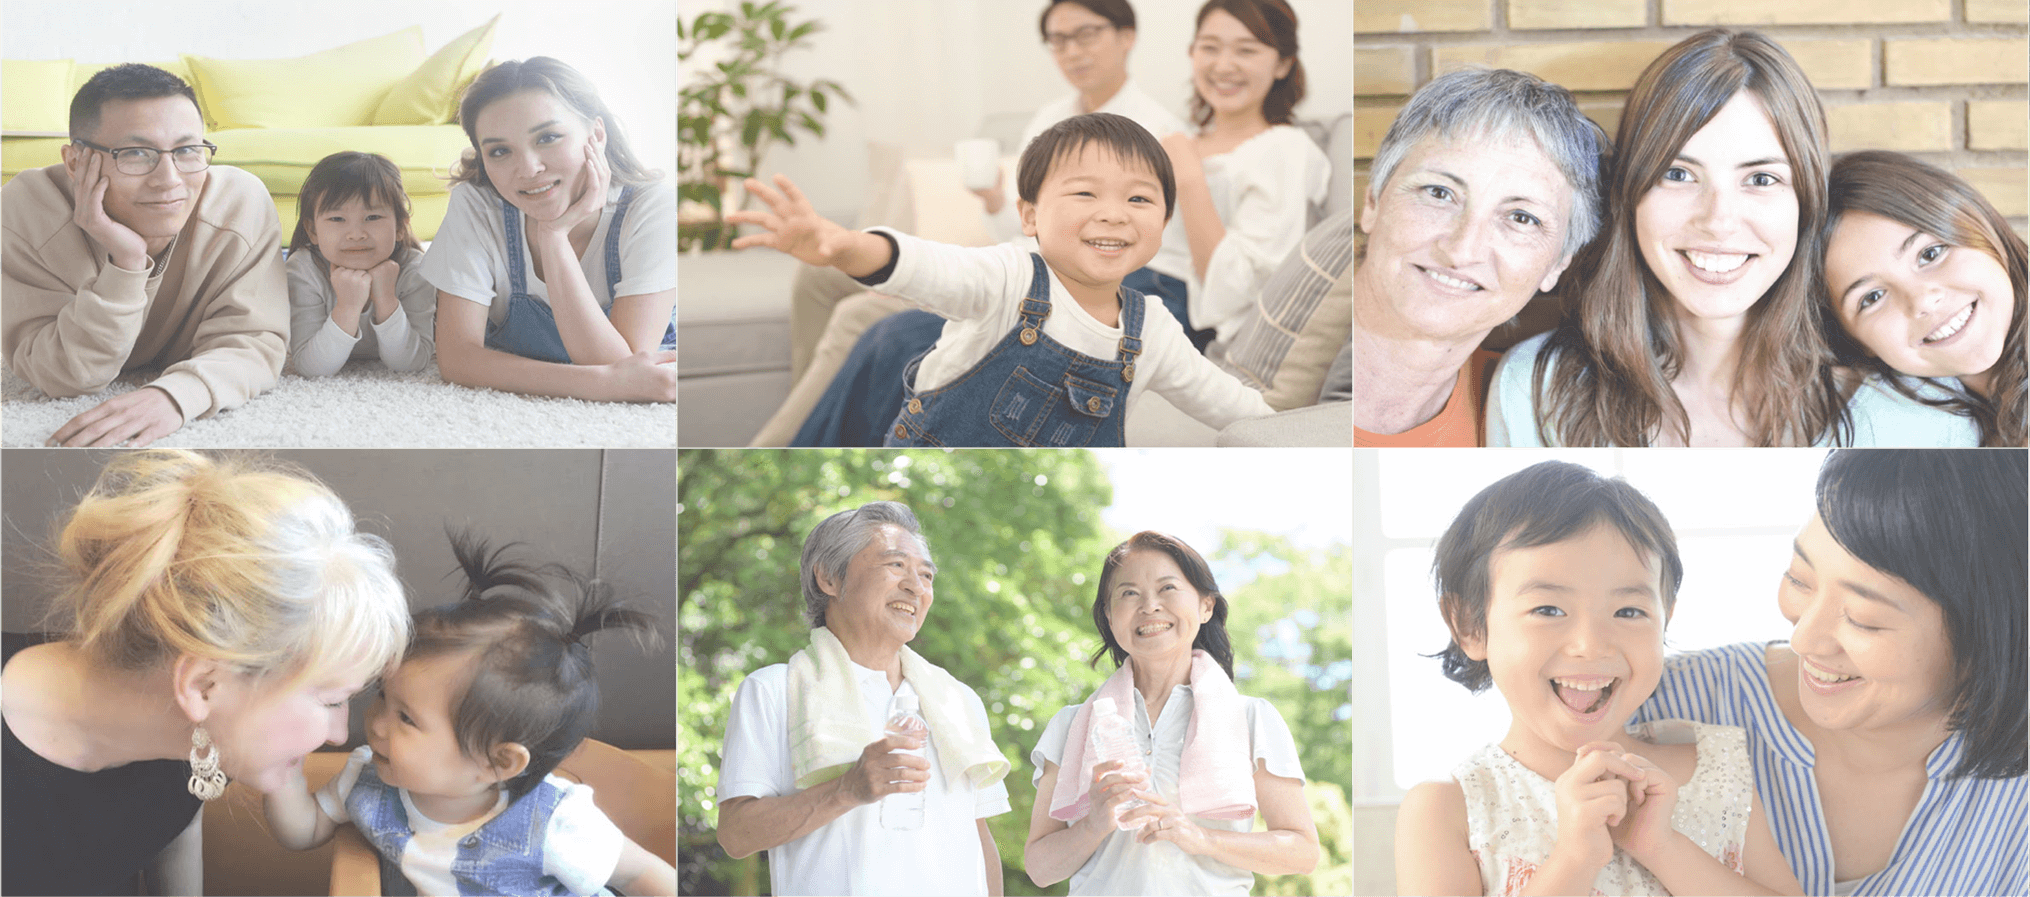 将日本的健康习惯传递给全世界